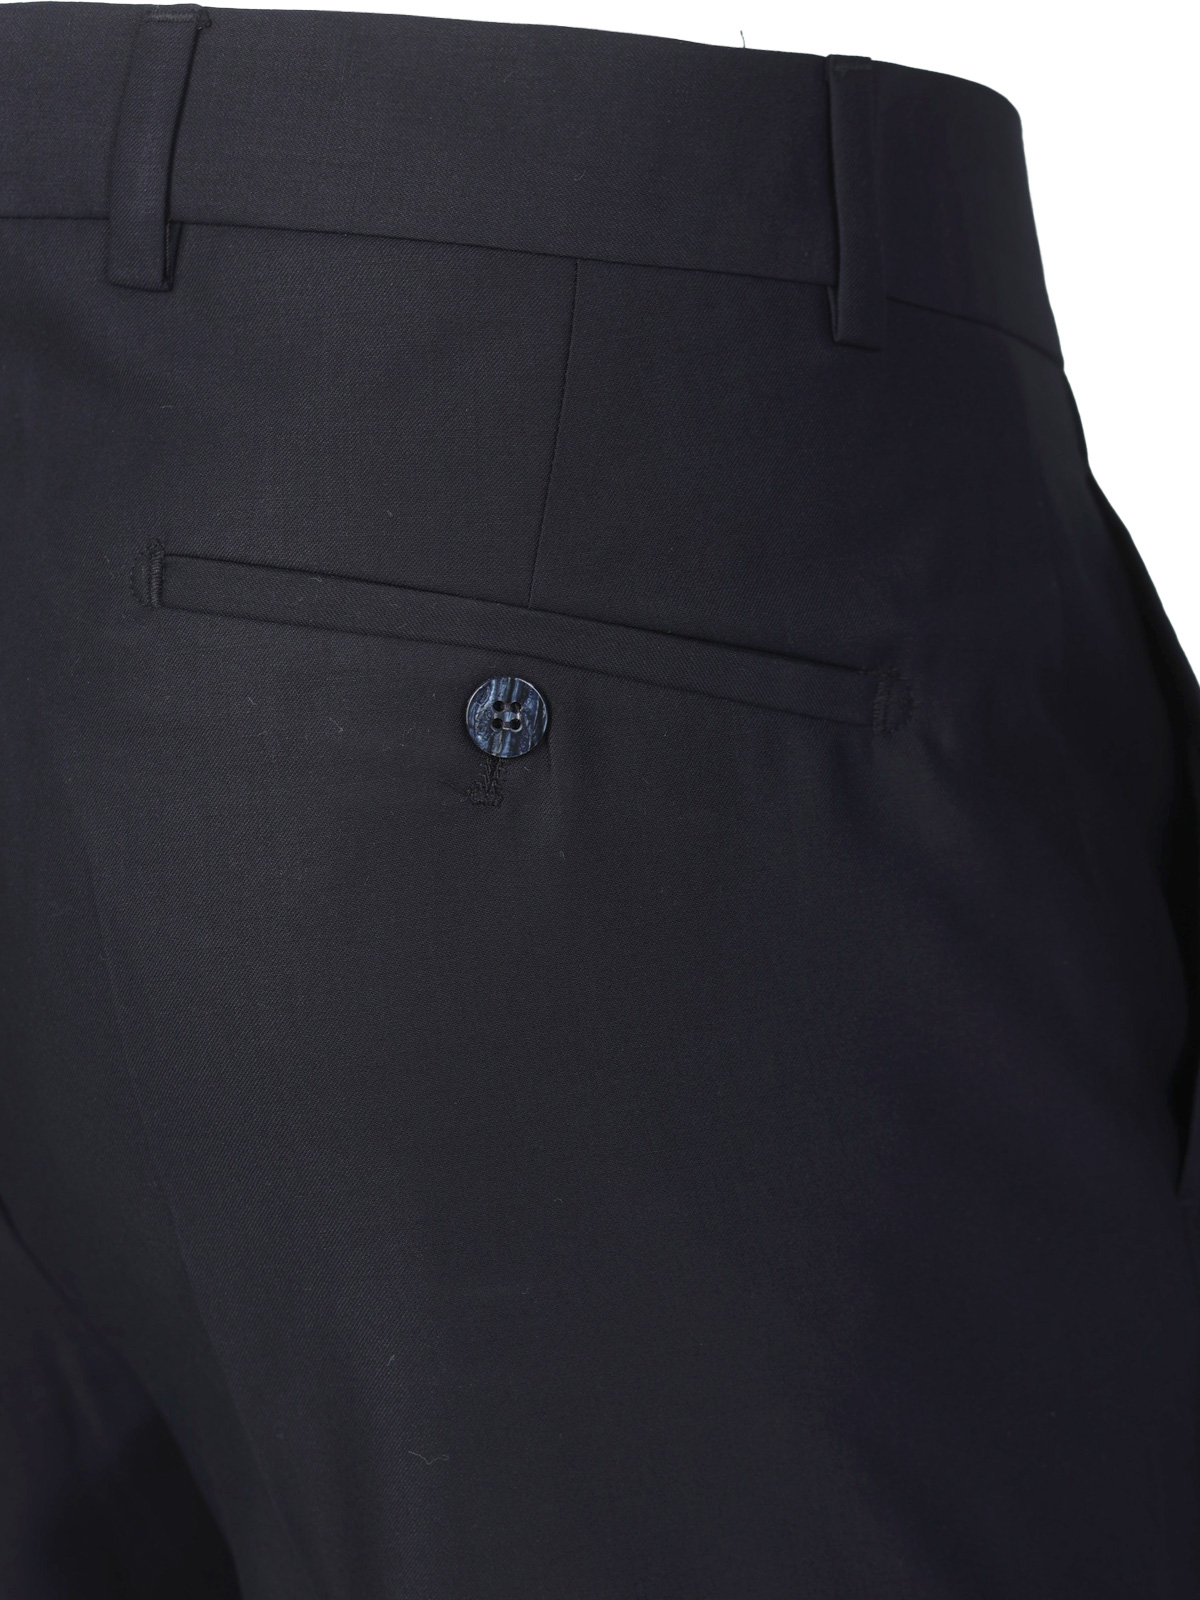 Κλασικό παντελόνι σε σκούρο μπλε - 63344 € 62.99 img3